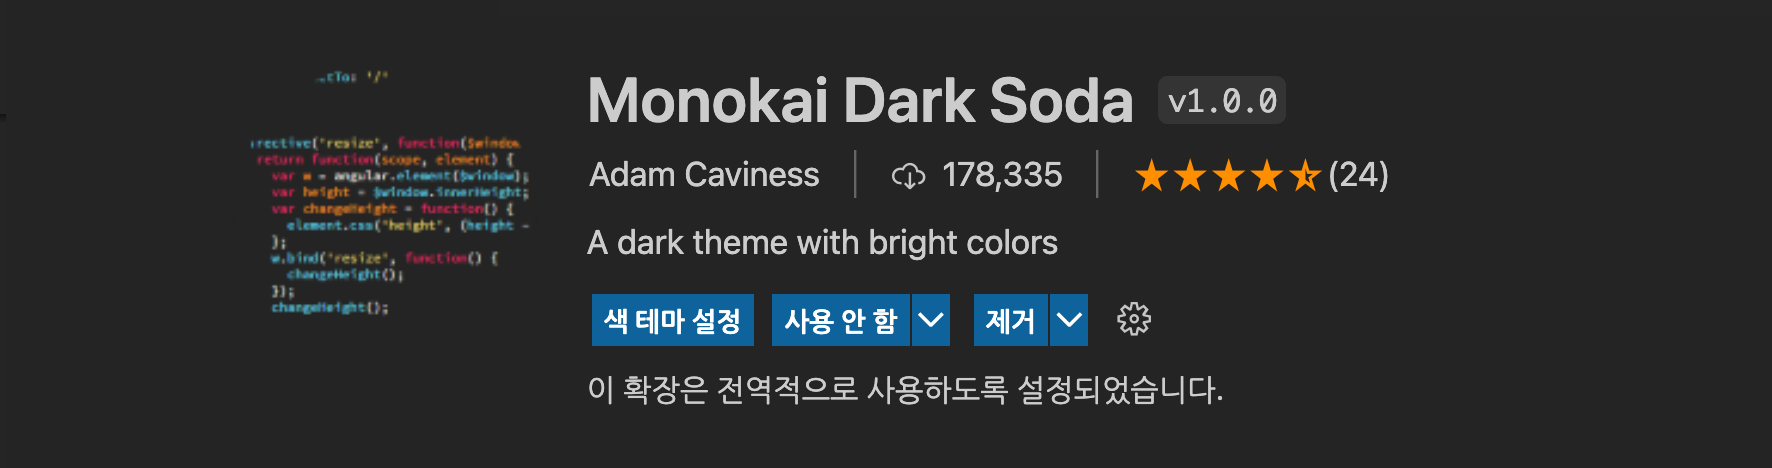 Molokai_Dark_Soda